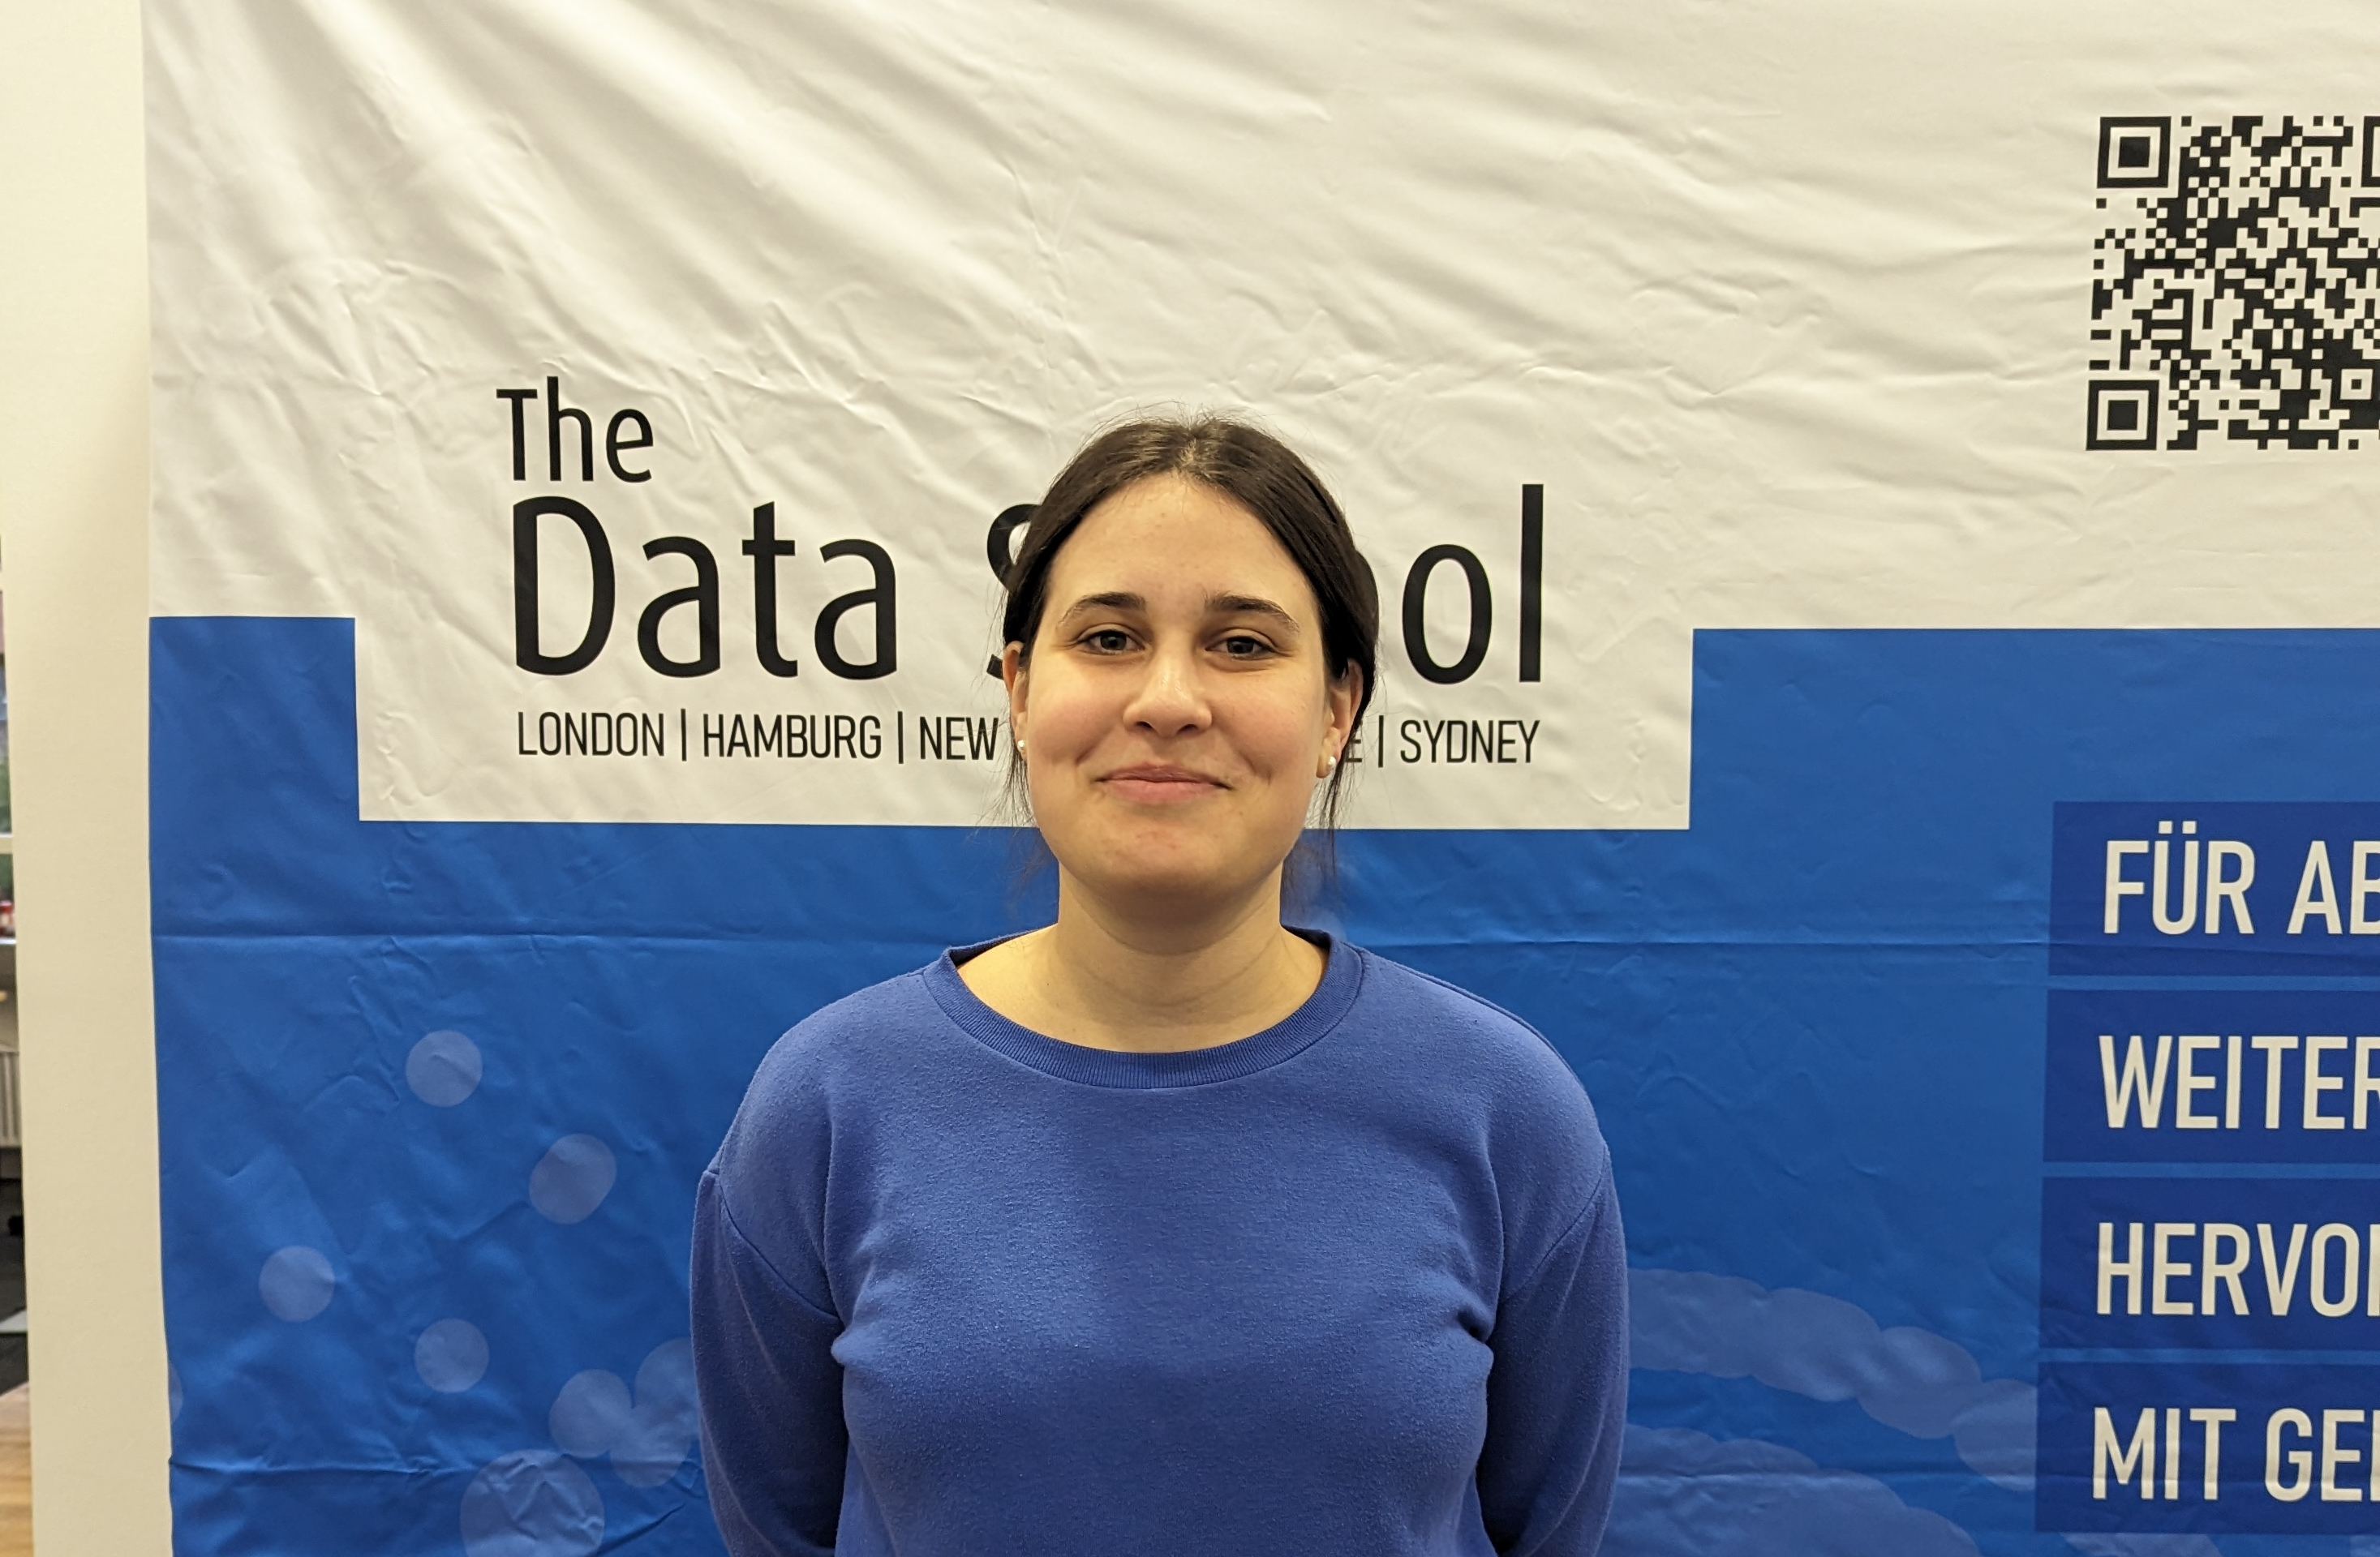 Lernen Sie unsere neuen Data Schooler kennen! 5 Fragen an Boglarka Lipka